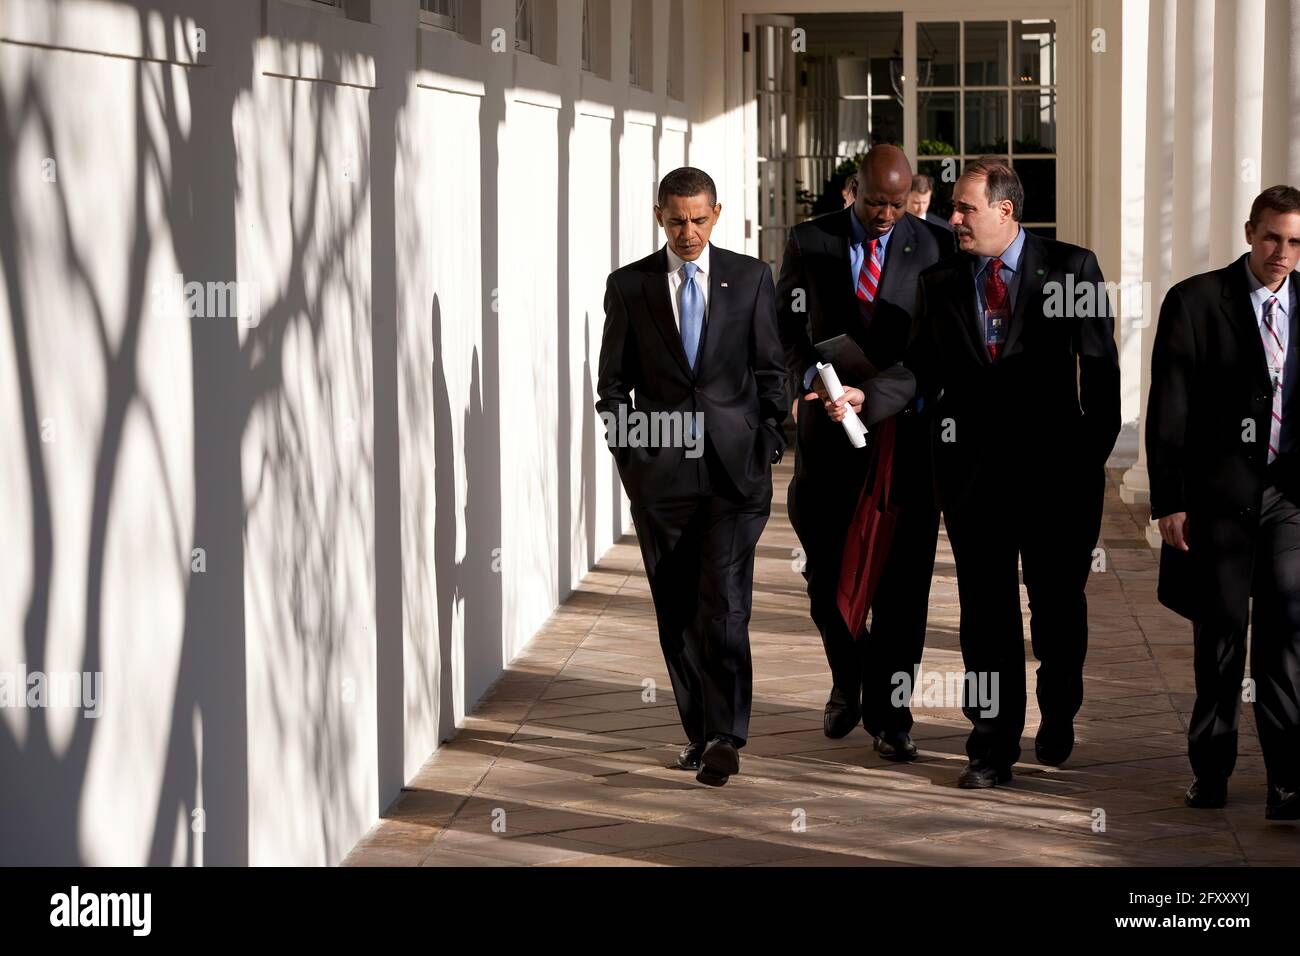 Präsident Barack Obama geht mit David Axelrod und Reggie Love (c) an seinem ersten Tag im Amt am 21. Januar 09 auf die Kolonnade. Offizielles weißes Haus Foto von Pete Souza Stockfoto